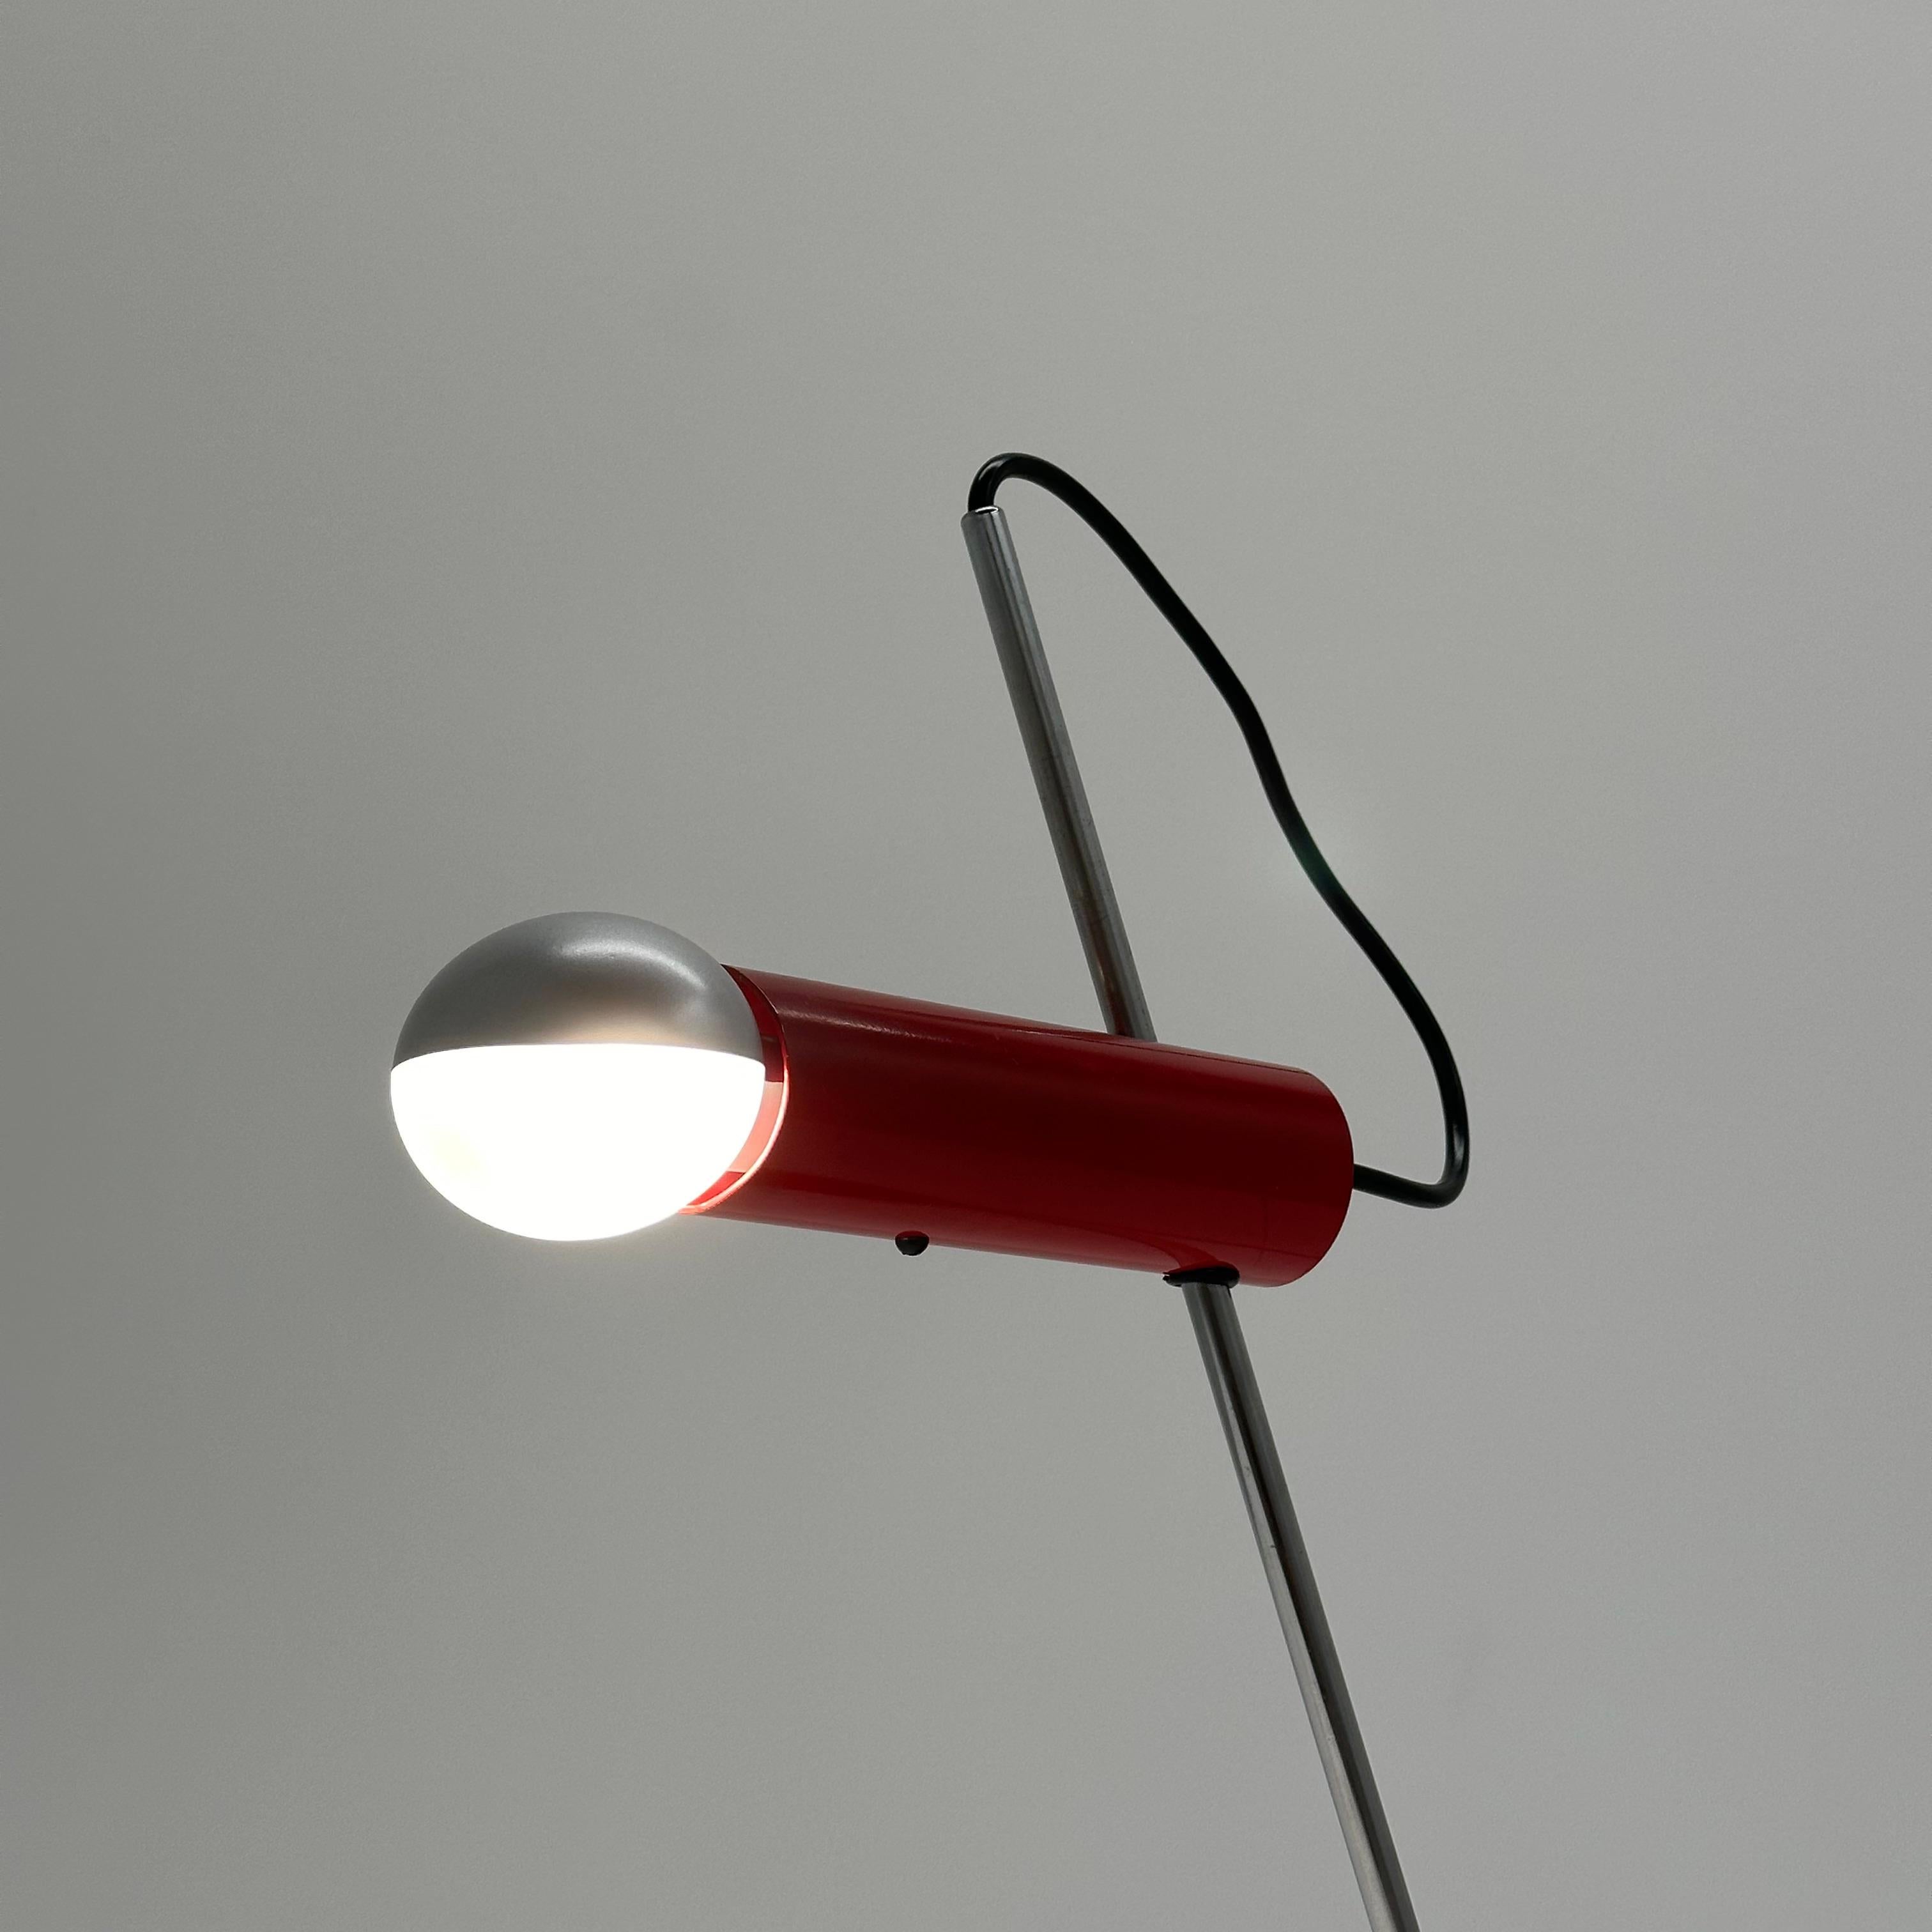 Lampe de table rouge précoce Gino Sarfatti modèle 566 pour Arteluce, Italie, 1956

Superbe lampe iconique Gino Sarfatti modèle 565 pour Arteluce conçue en 1956 dans une rare couleur rouge.

Informations supplémentaires :
MATERIAL : Acier émaillé,